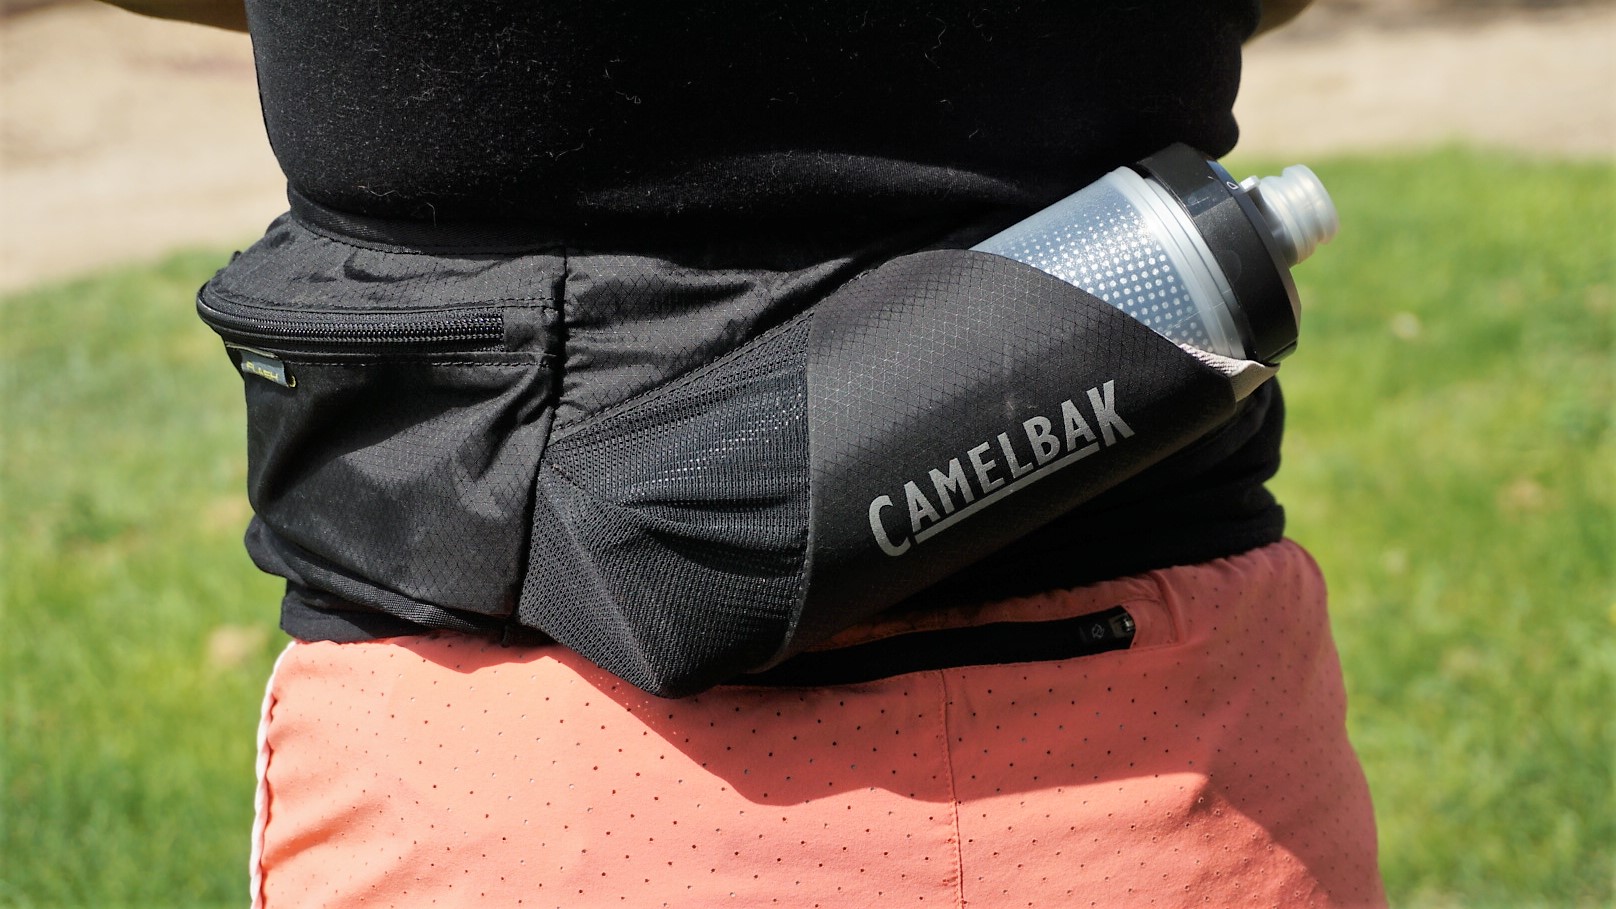 a photo of the Camelbak running belt